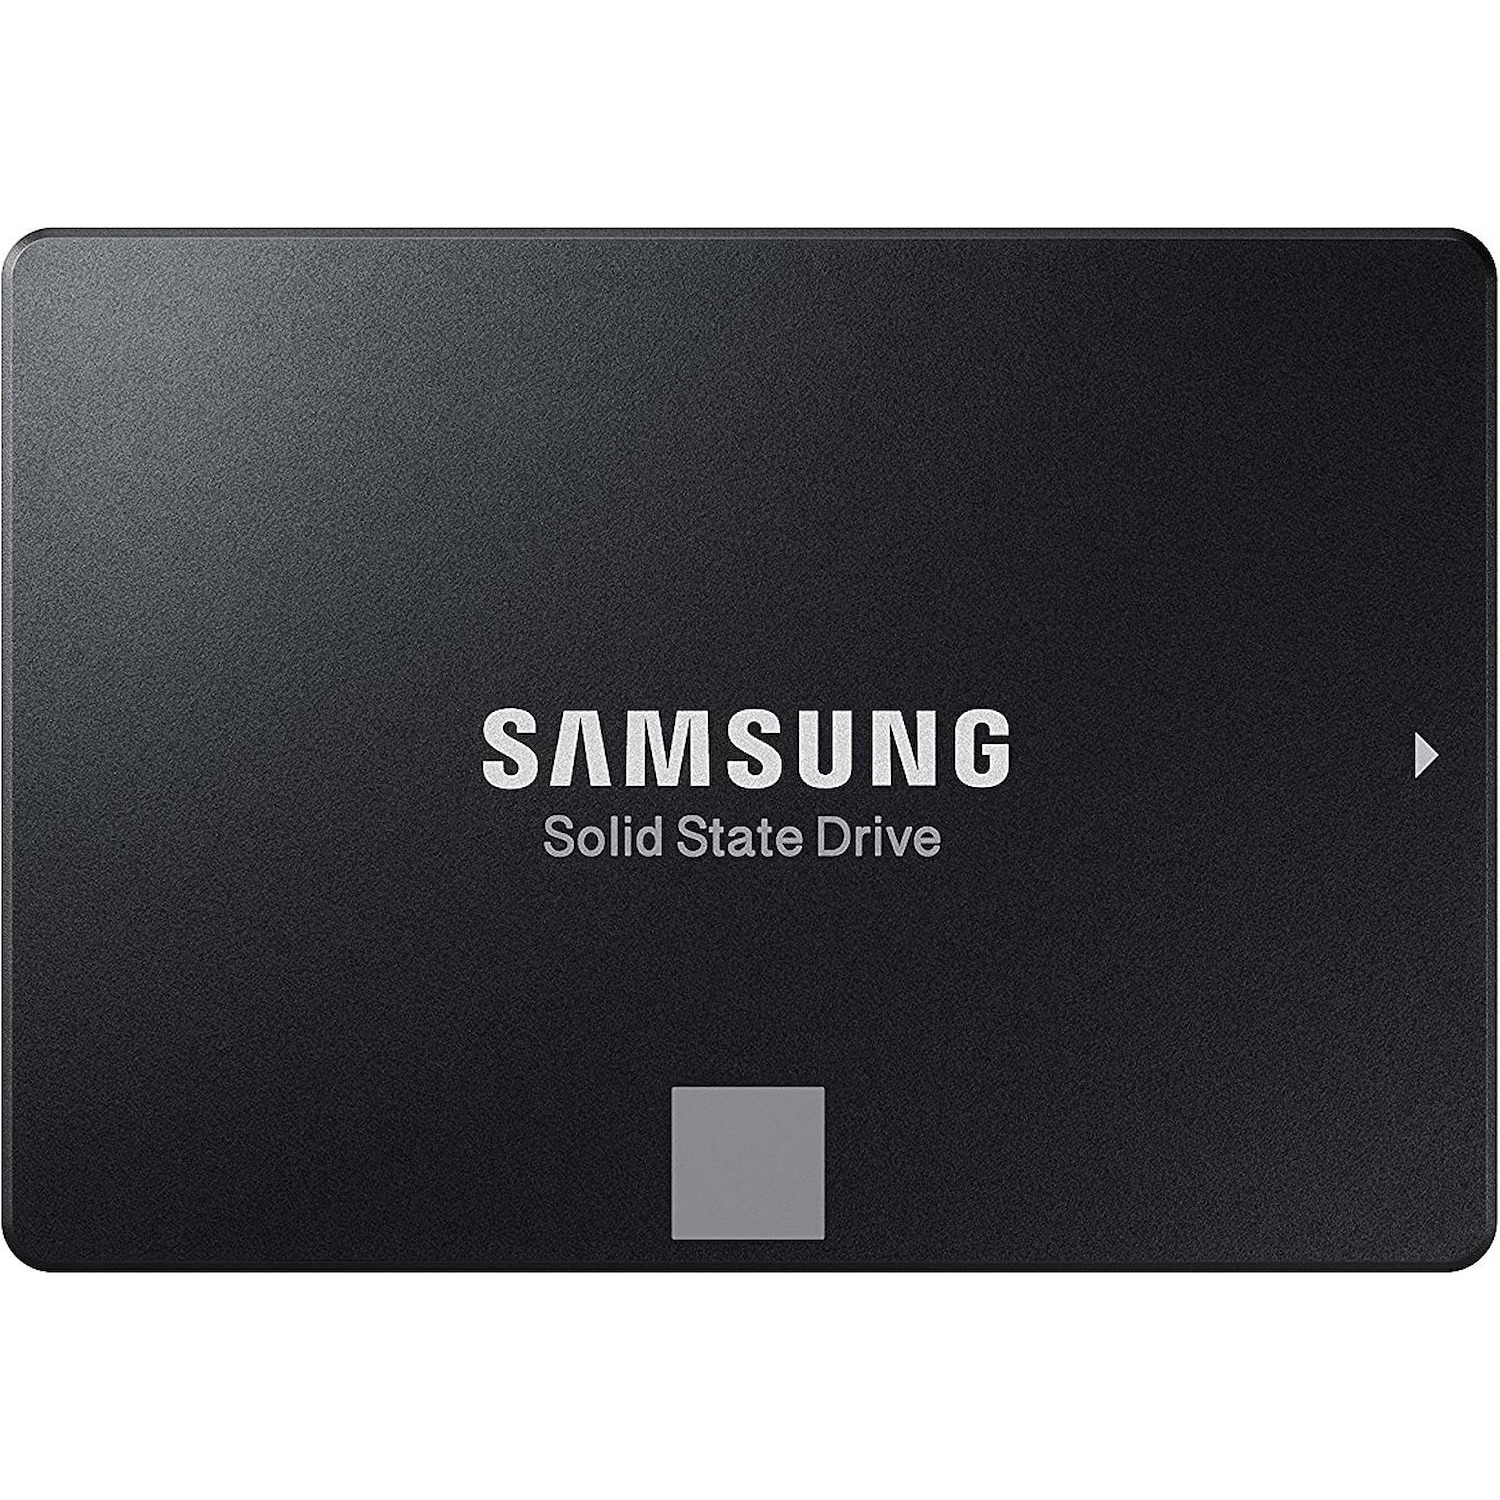 Immagine per HD SSD Samsung 500GB Sata 3 2,5" da DIMOStore